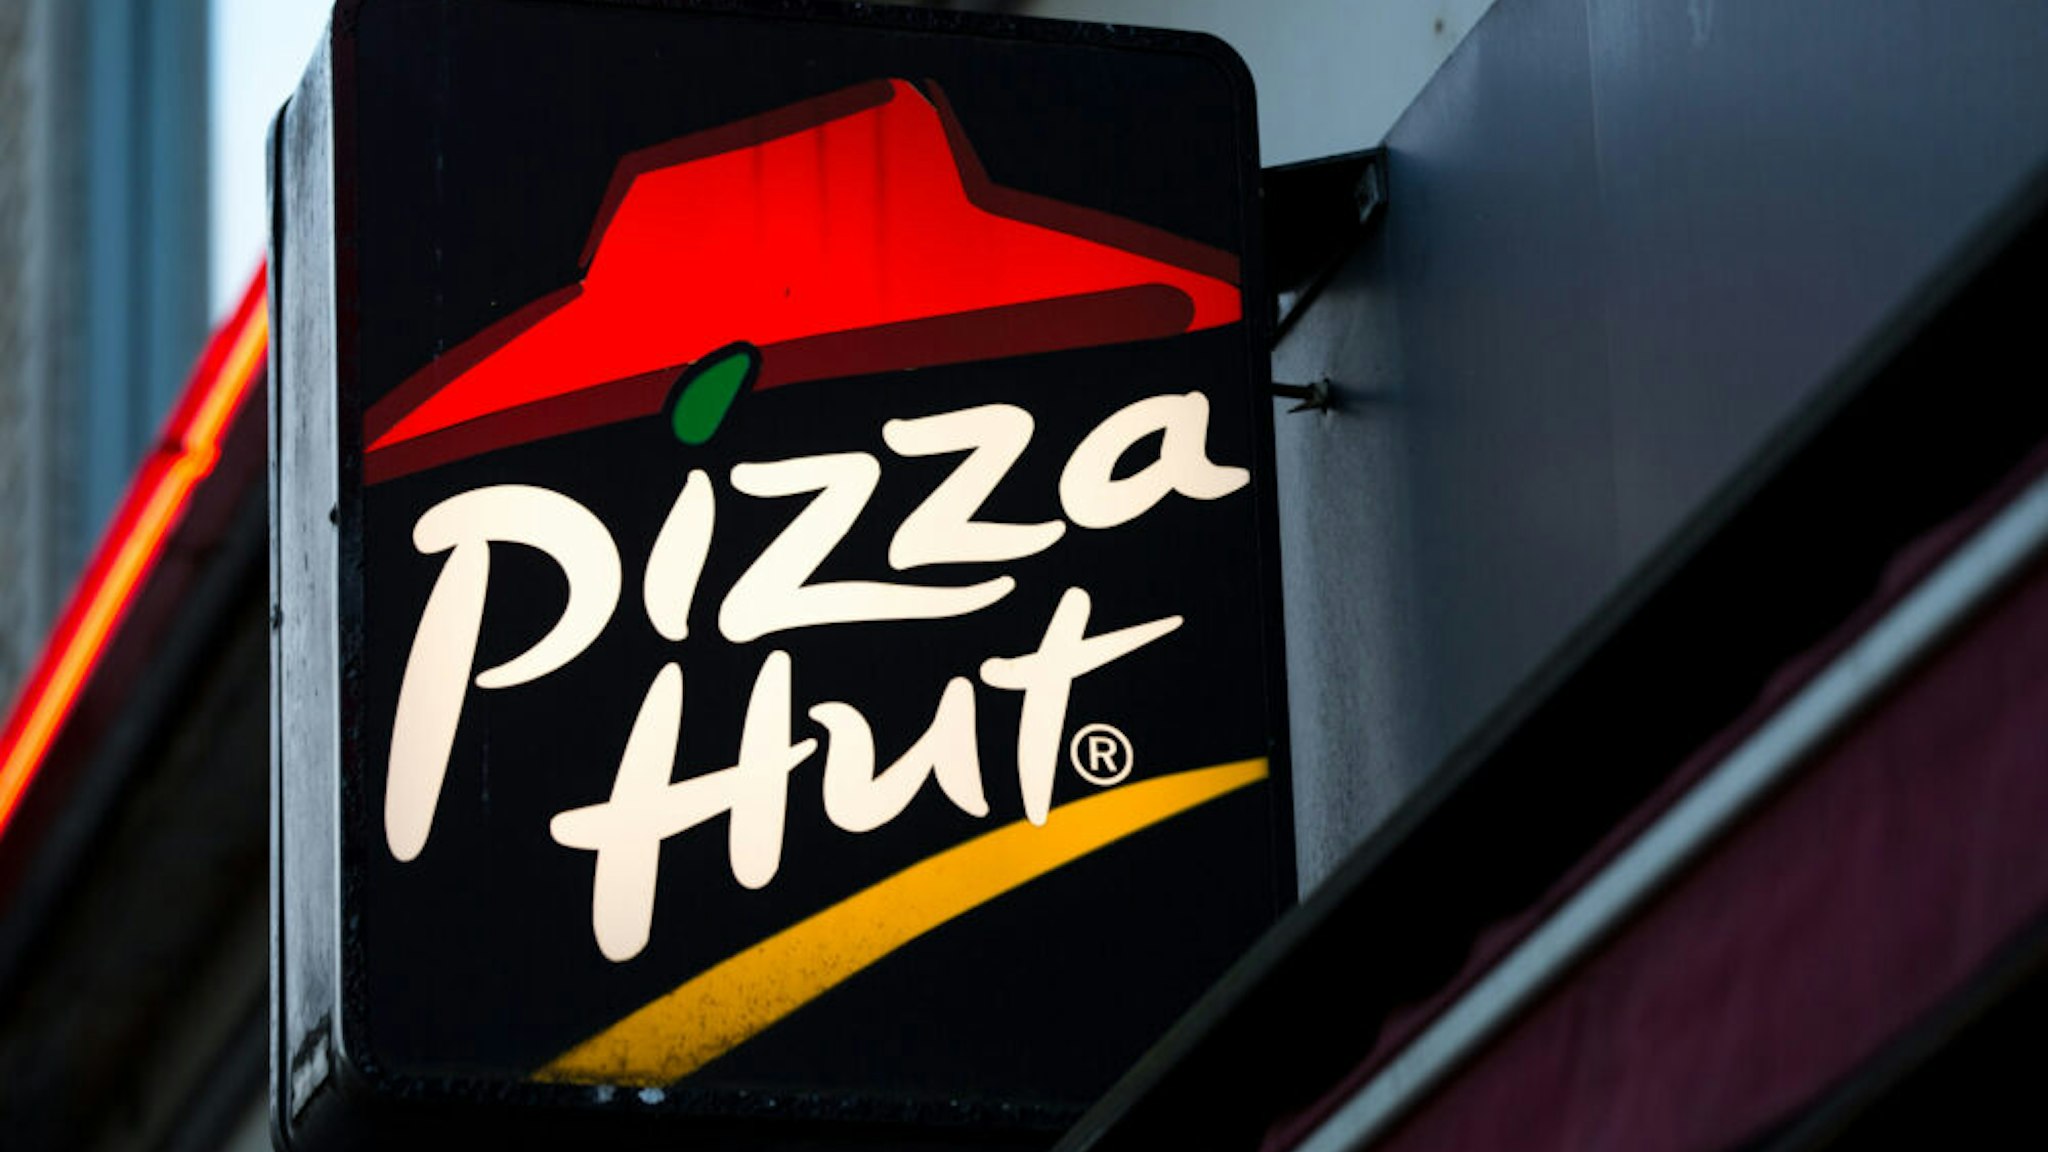 GOTHENBURG, SWEDEN - 2019/10/03: American restaurant chain and international franchise Pizza Hut logo seen in Gothenburg.